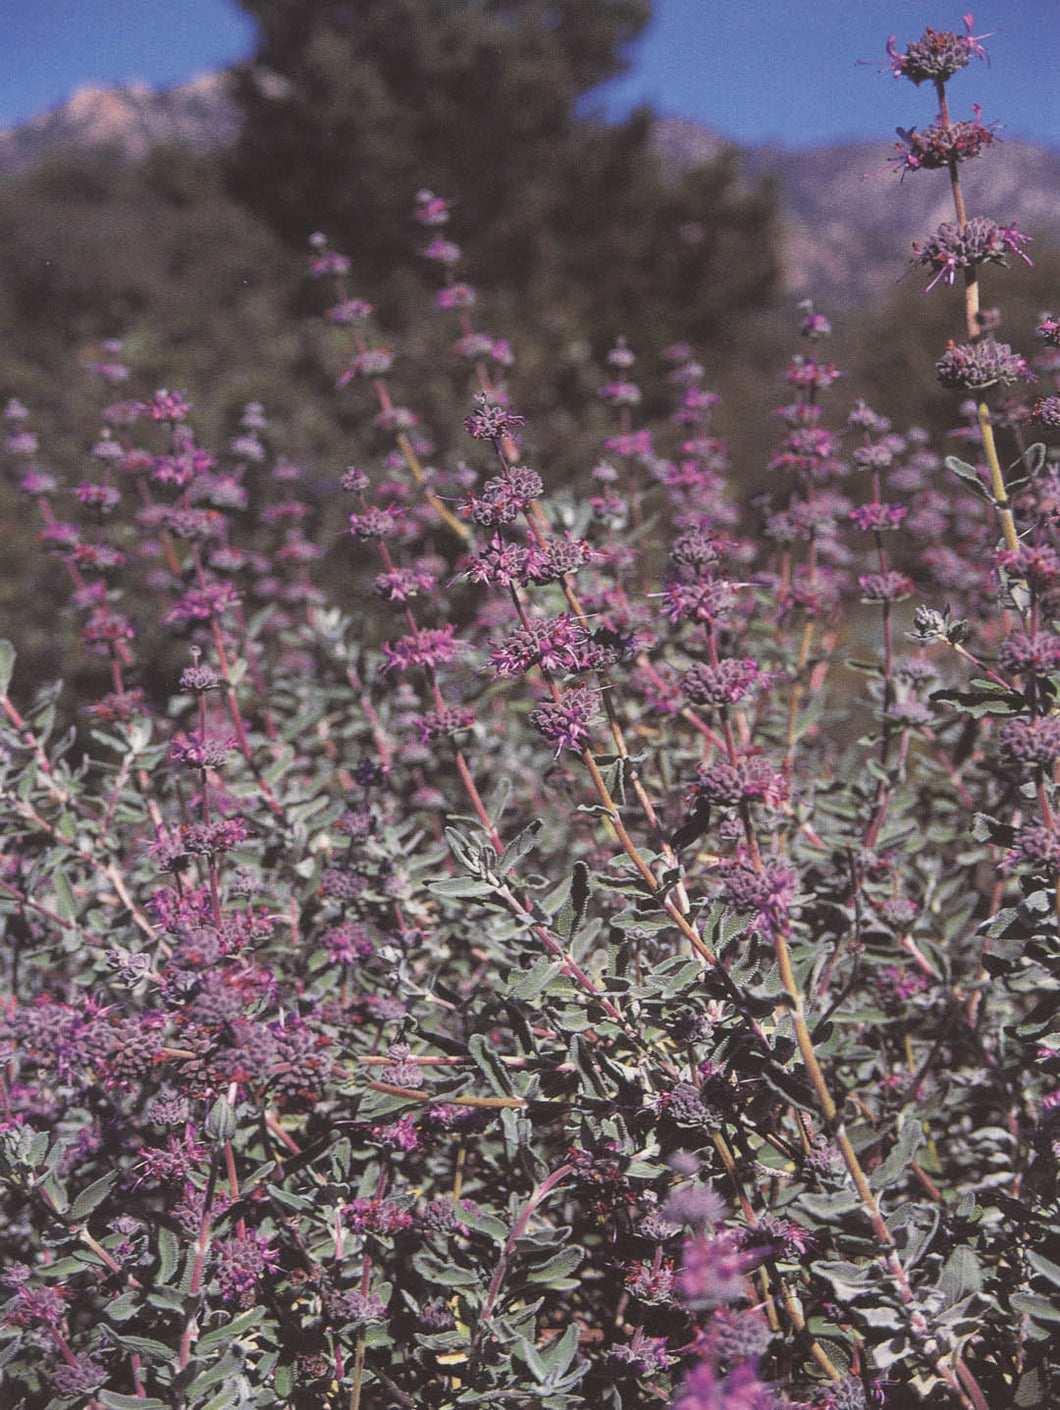 Salvia leucophylla 'Amethyst Bluff' - Amethyst Bluff Sage